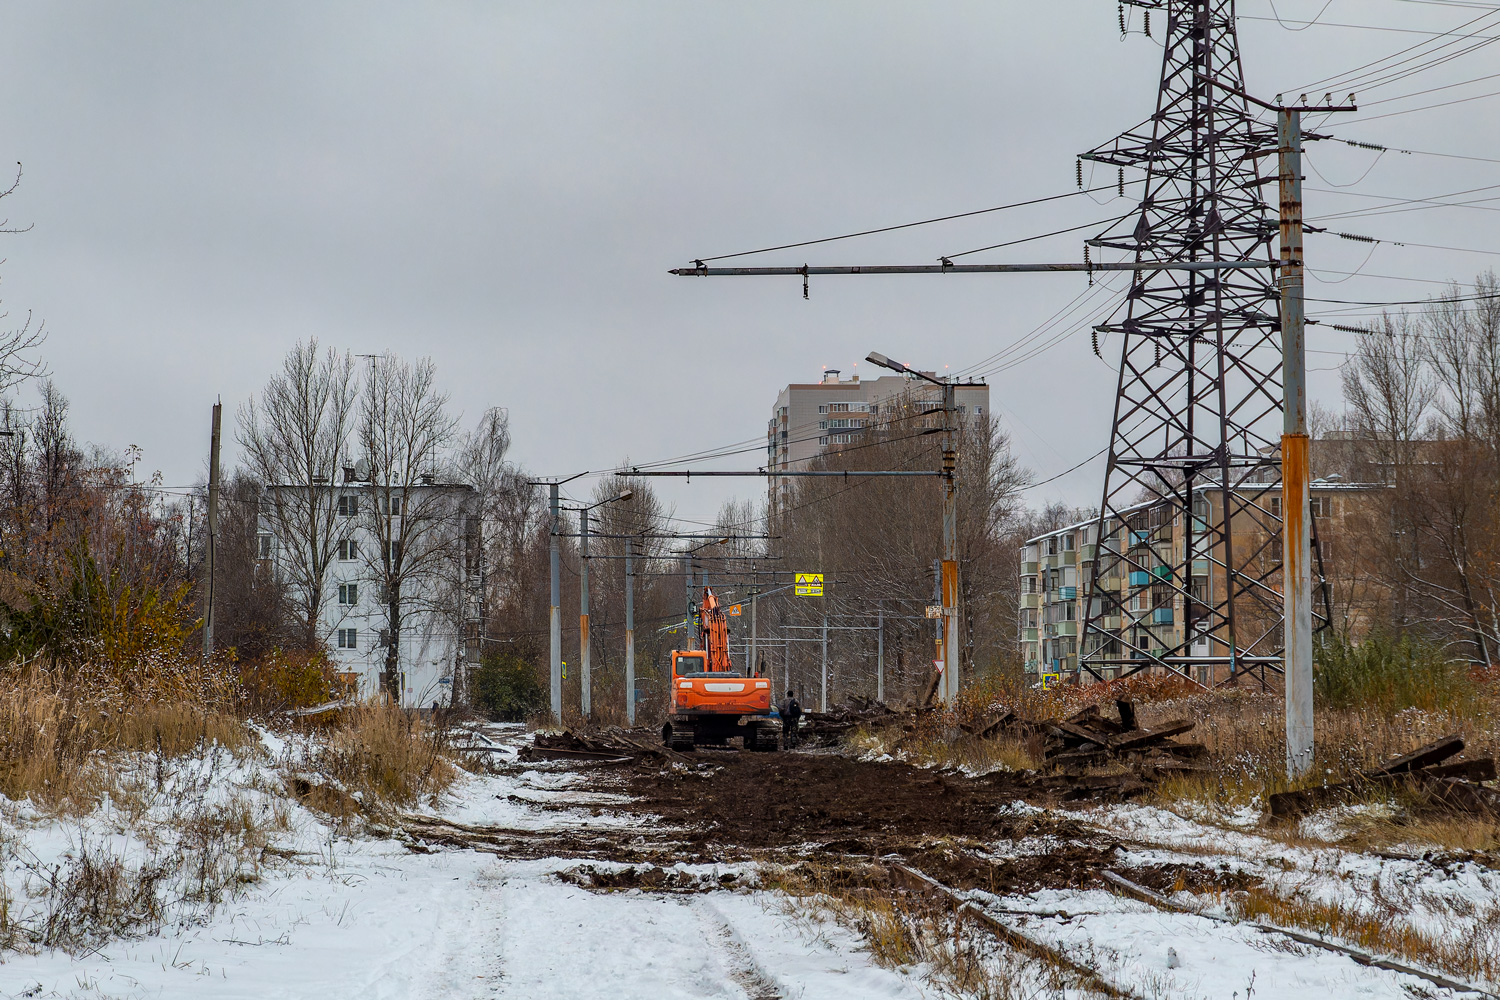 Ярославль — Реконструкция трамвайной сети в рамках концессионного соглашения. Этап №1